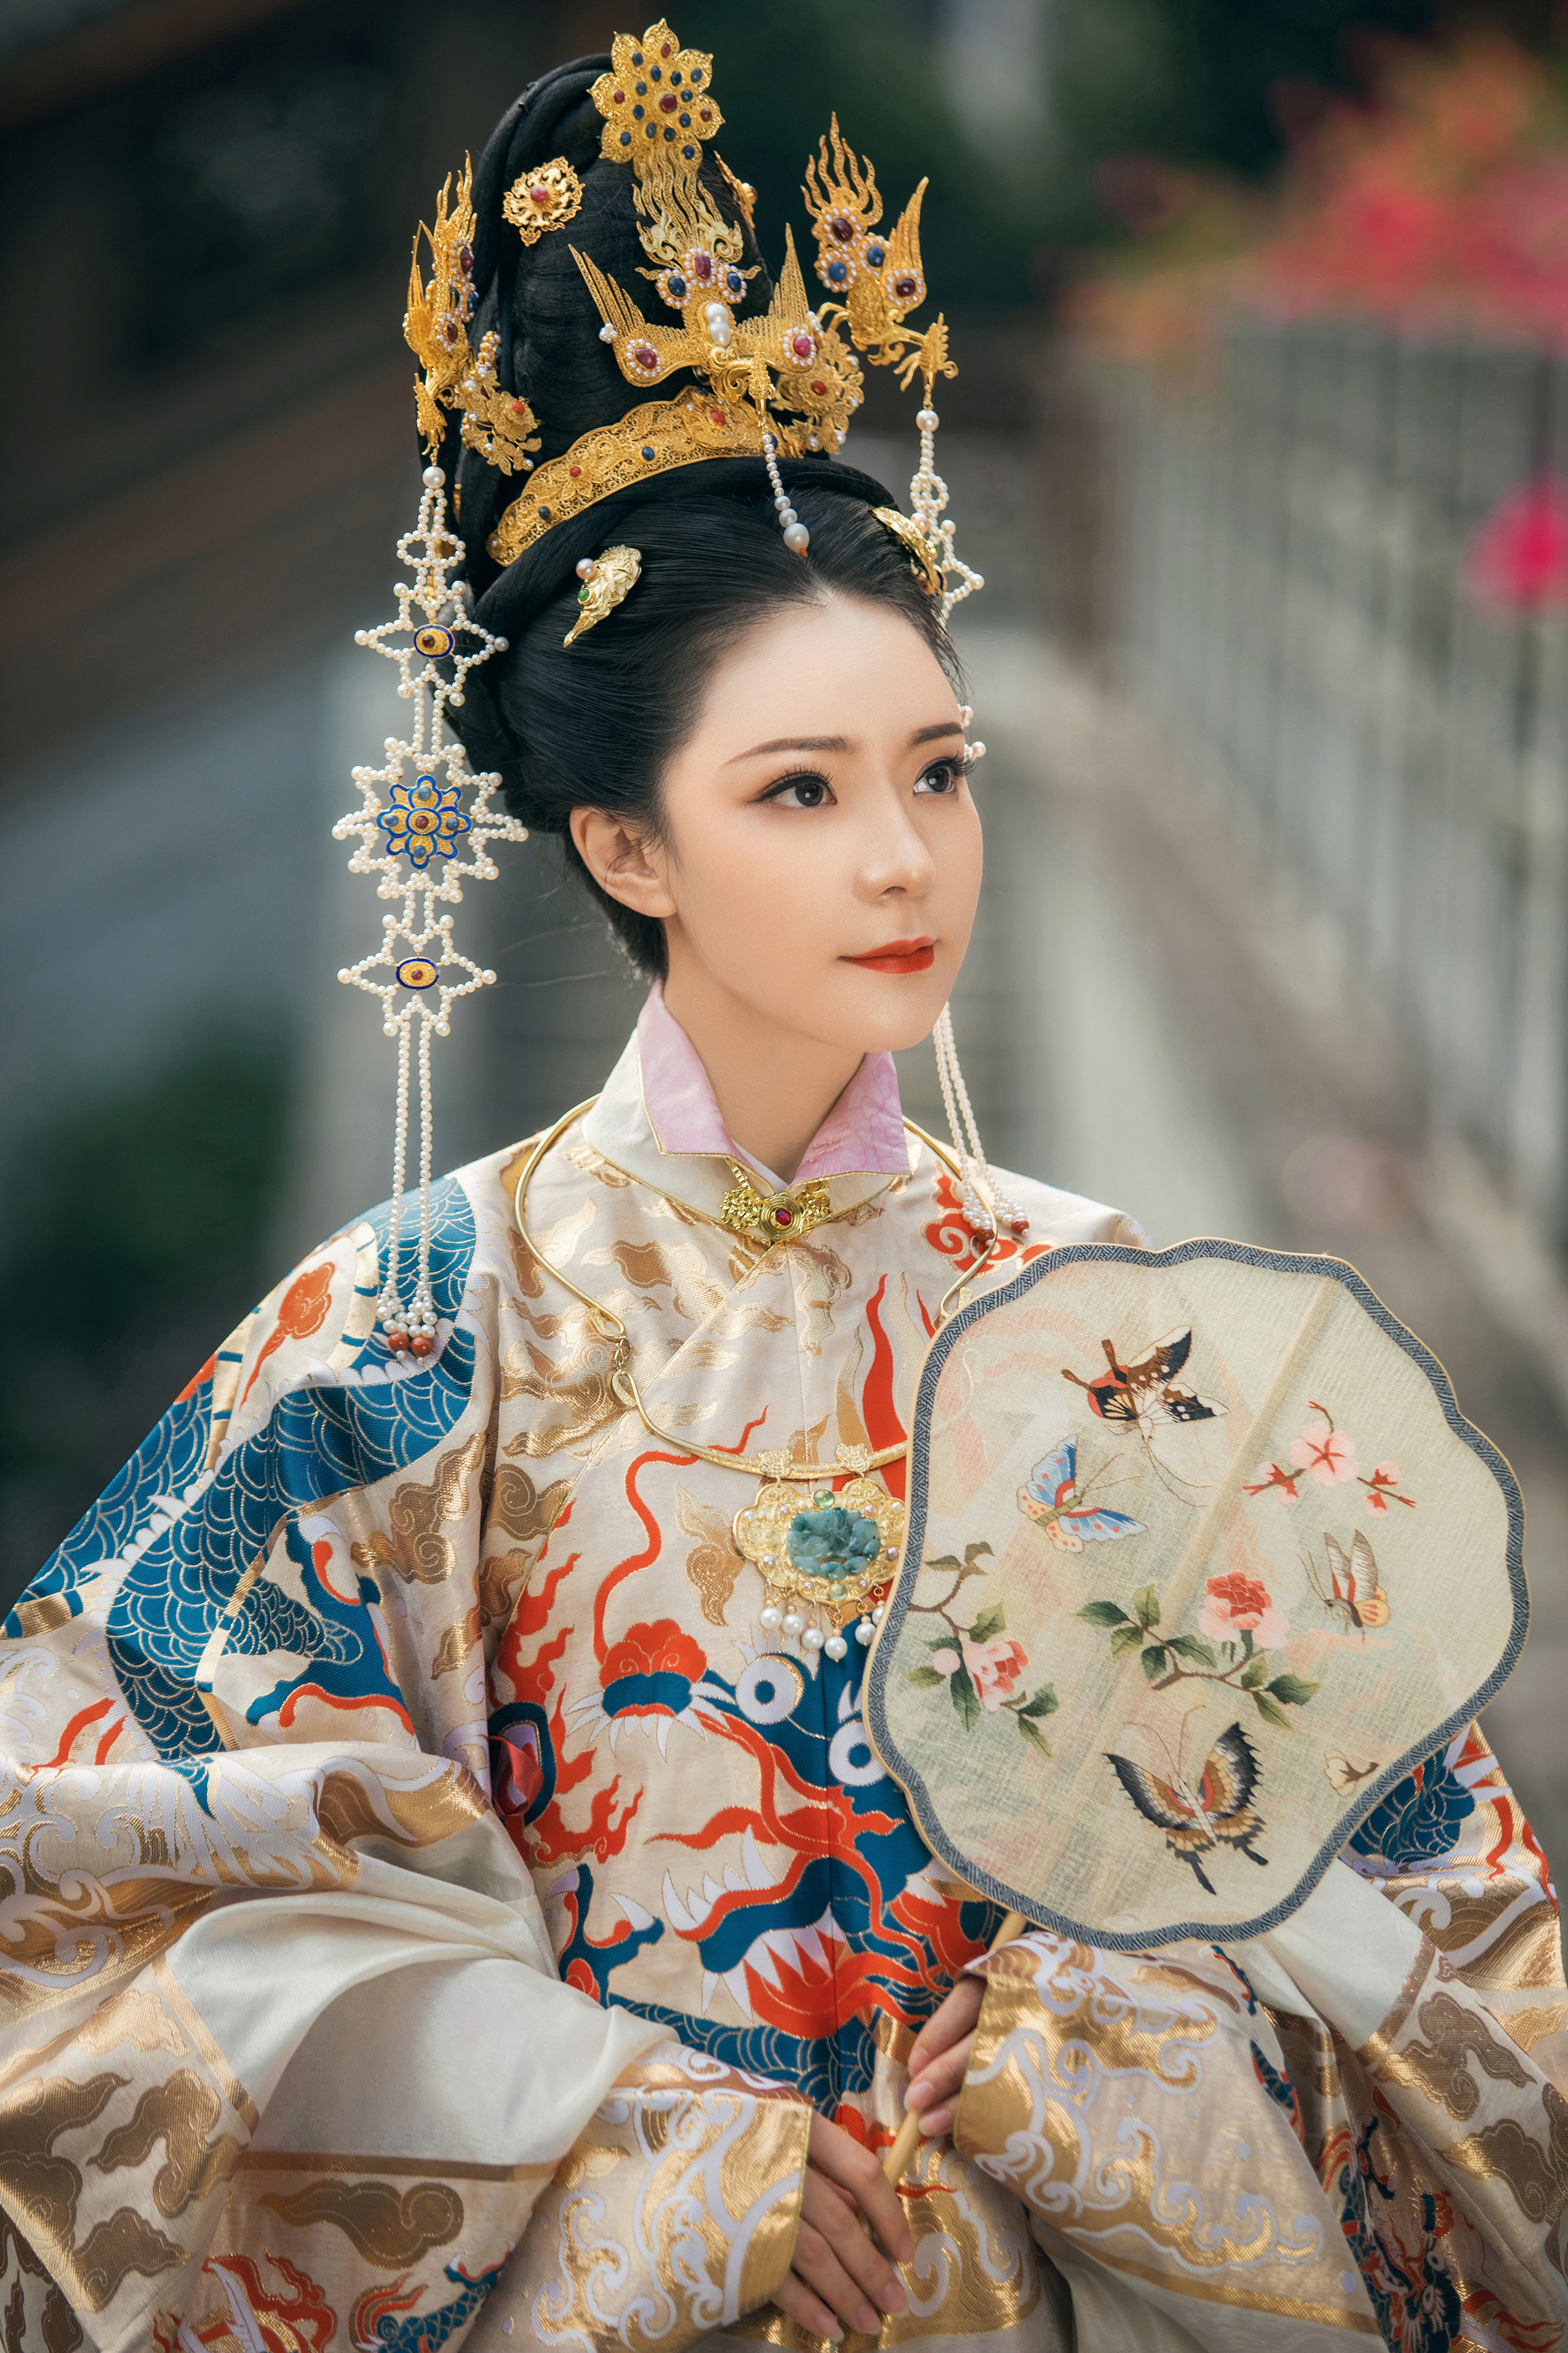 明代贵族女性服饰图片